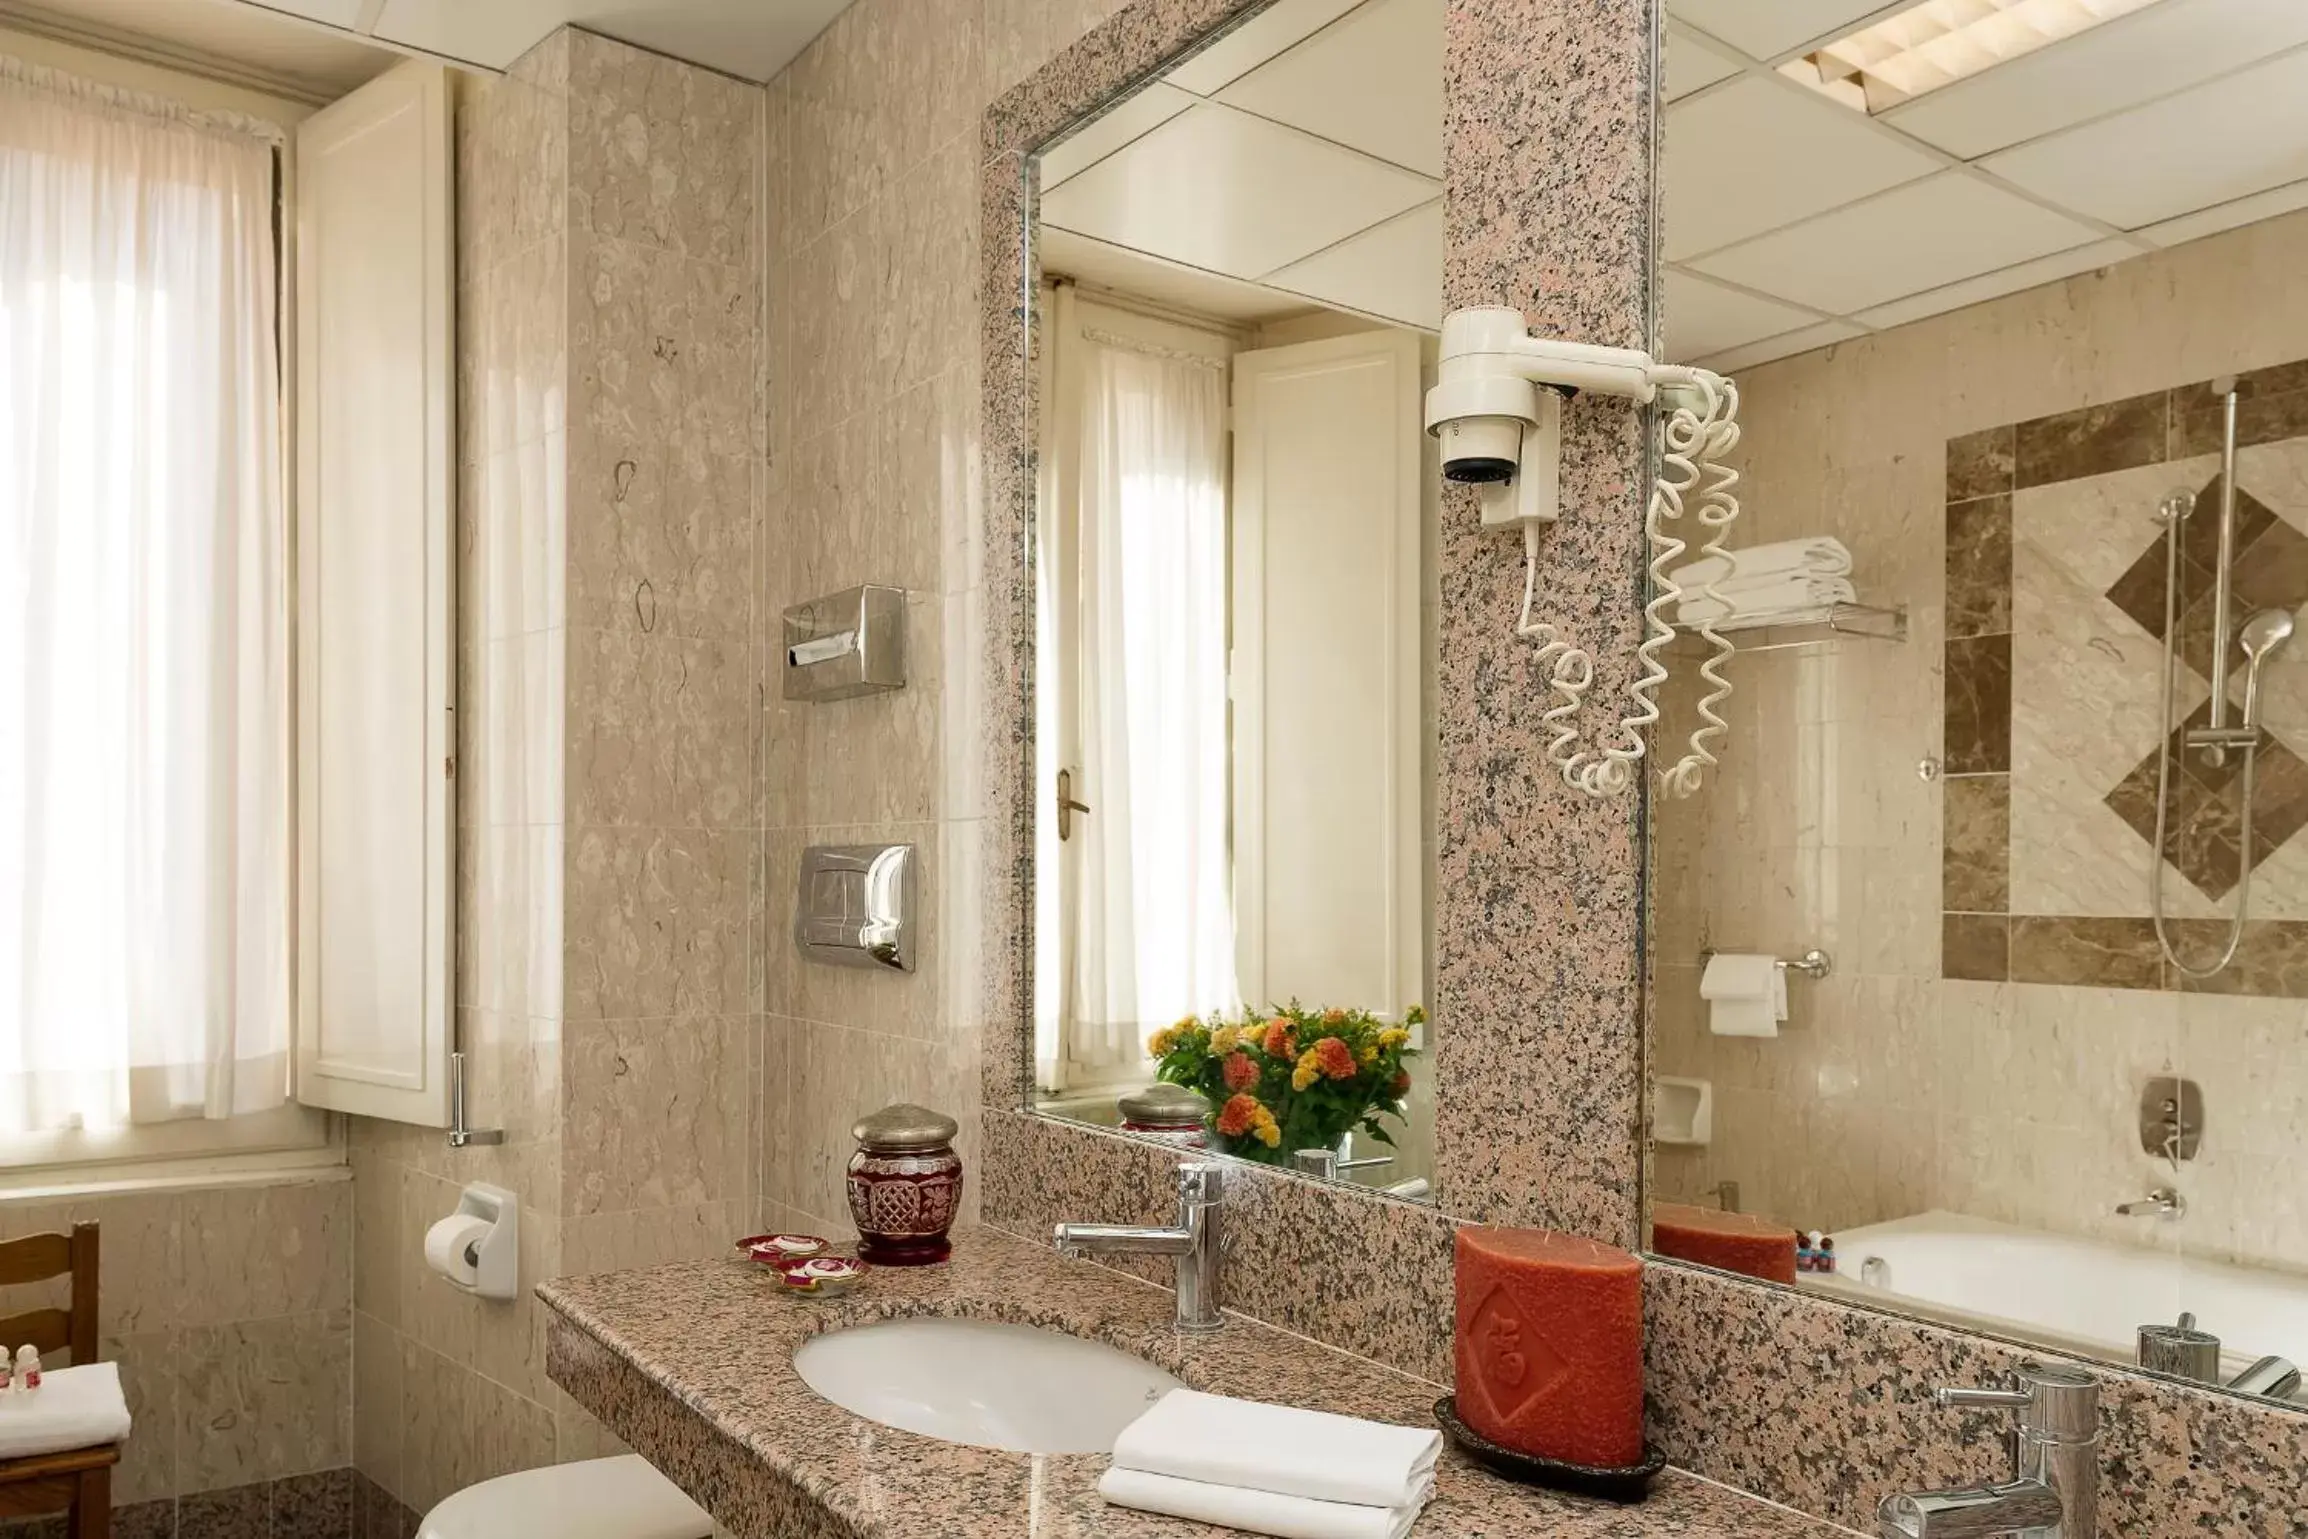 Toilet, Bathroom in Bettoja Hotel Massimo d'Azeglio